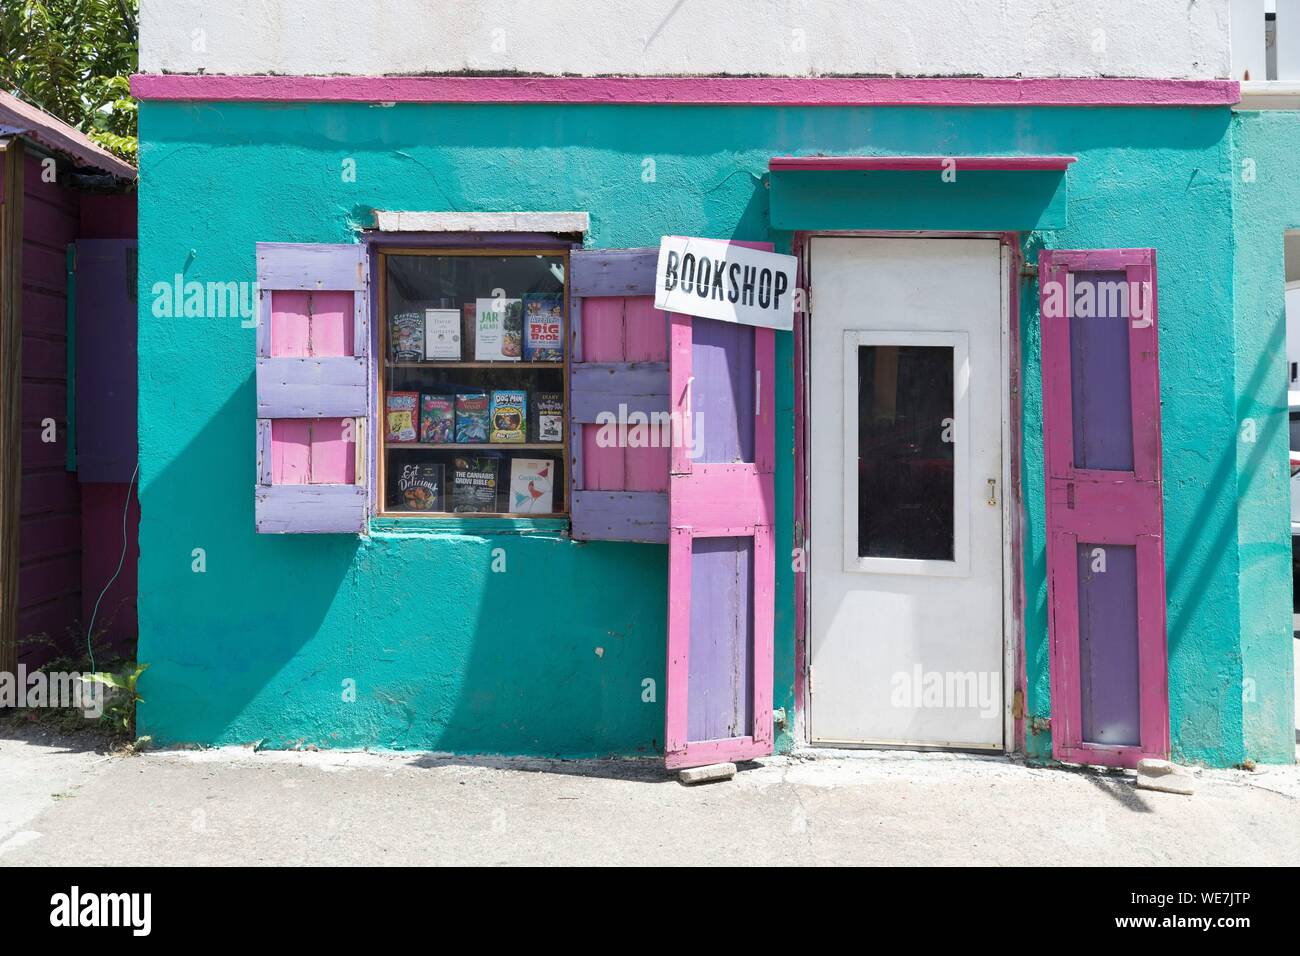 West Indies, British Virgin Islands, Tortola Island, Tortola, eine kleine Bibliothek mit sehr bunten Wänden Stockfoto